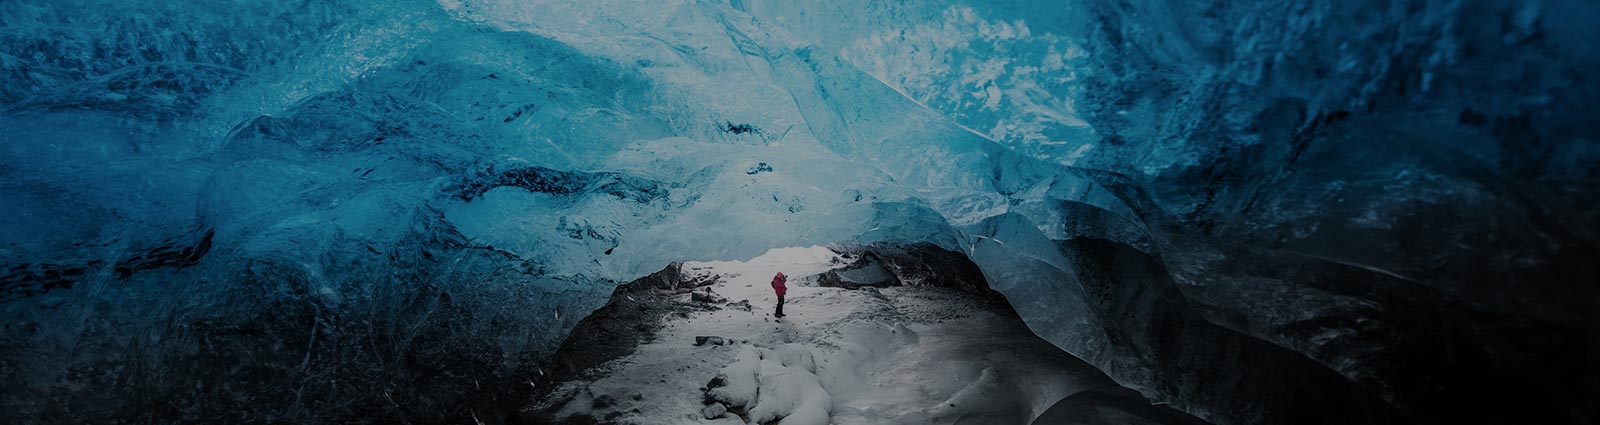 Man traveler exploring ice cave in Vatnajokull glacier, Iceland.